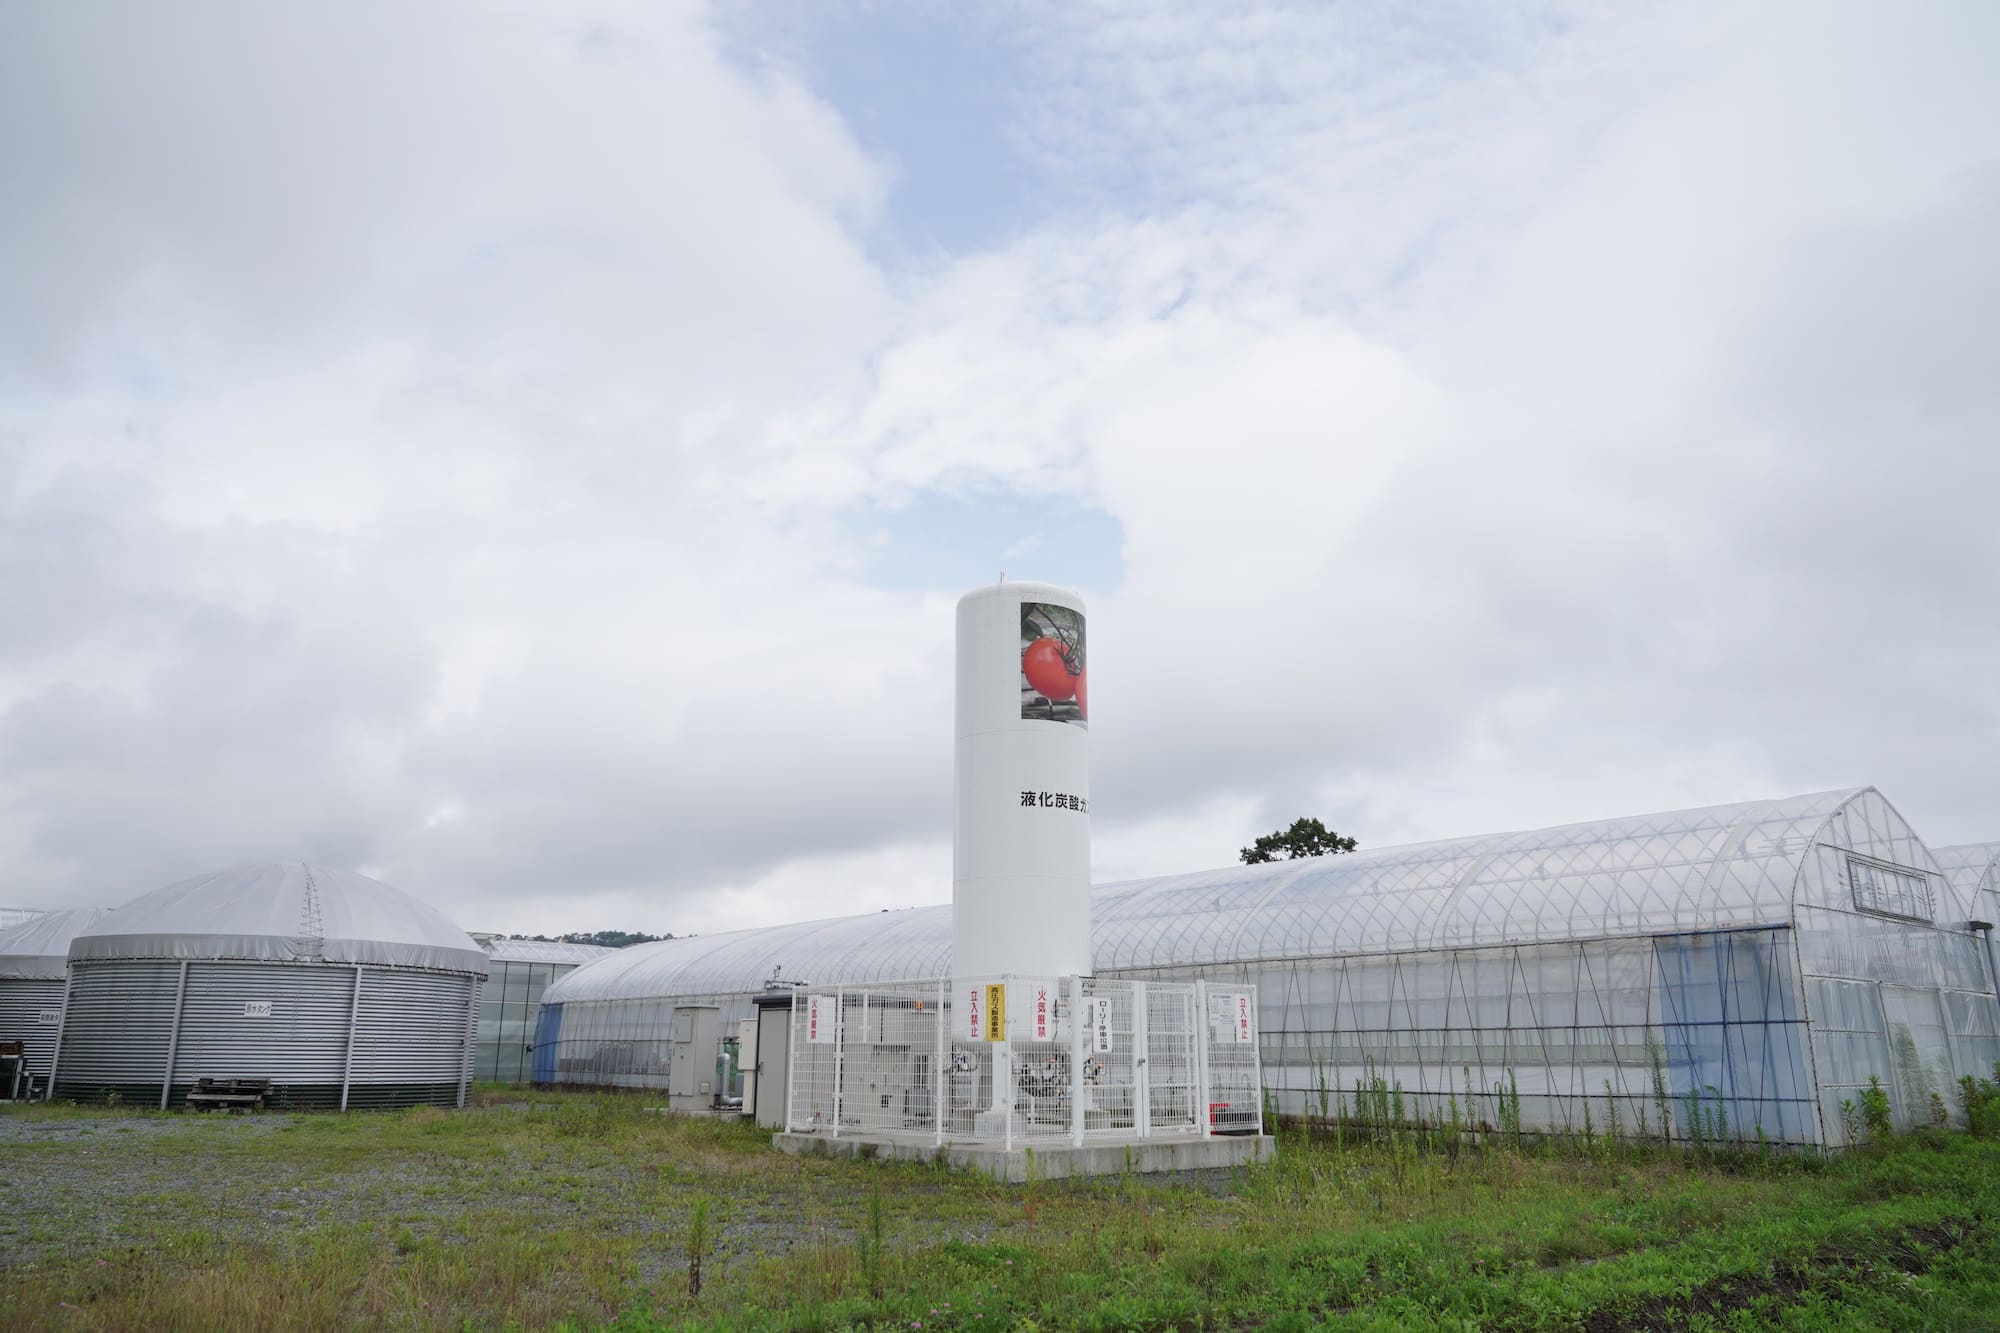 広大な敷地に設けられた施設でトマトの養液栽培が行われている